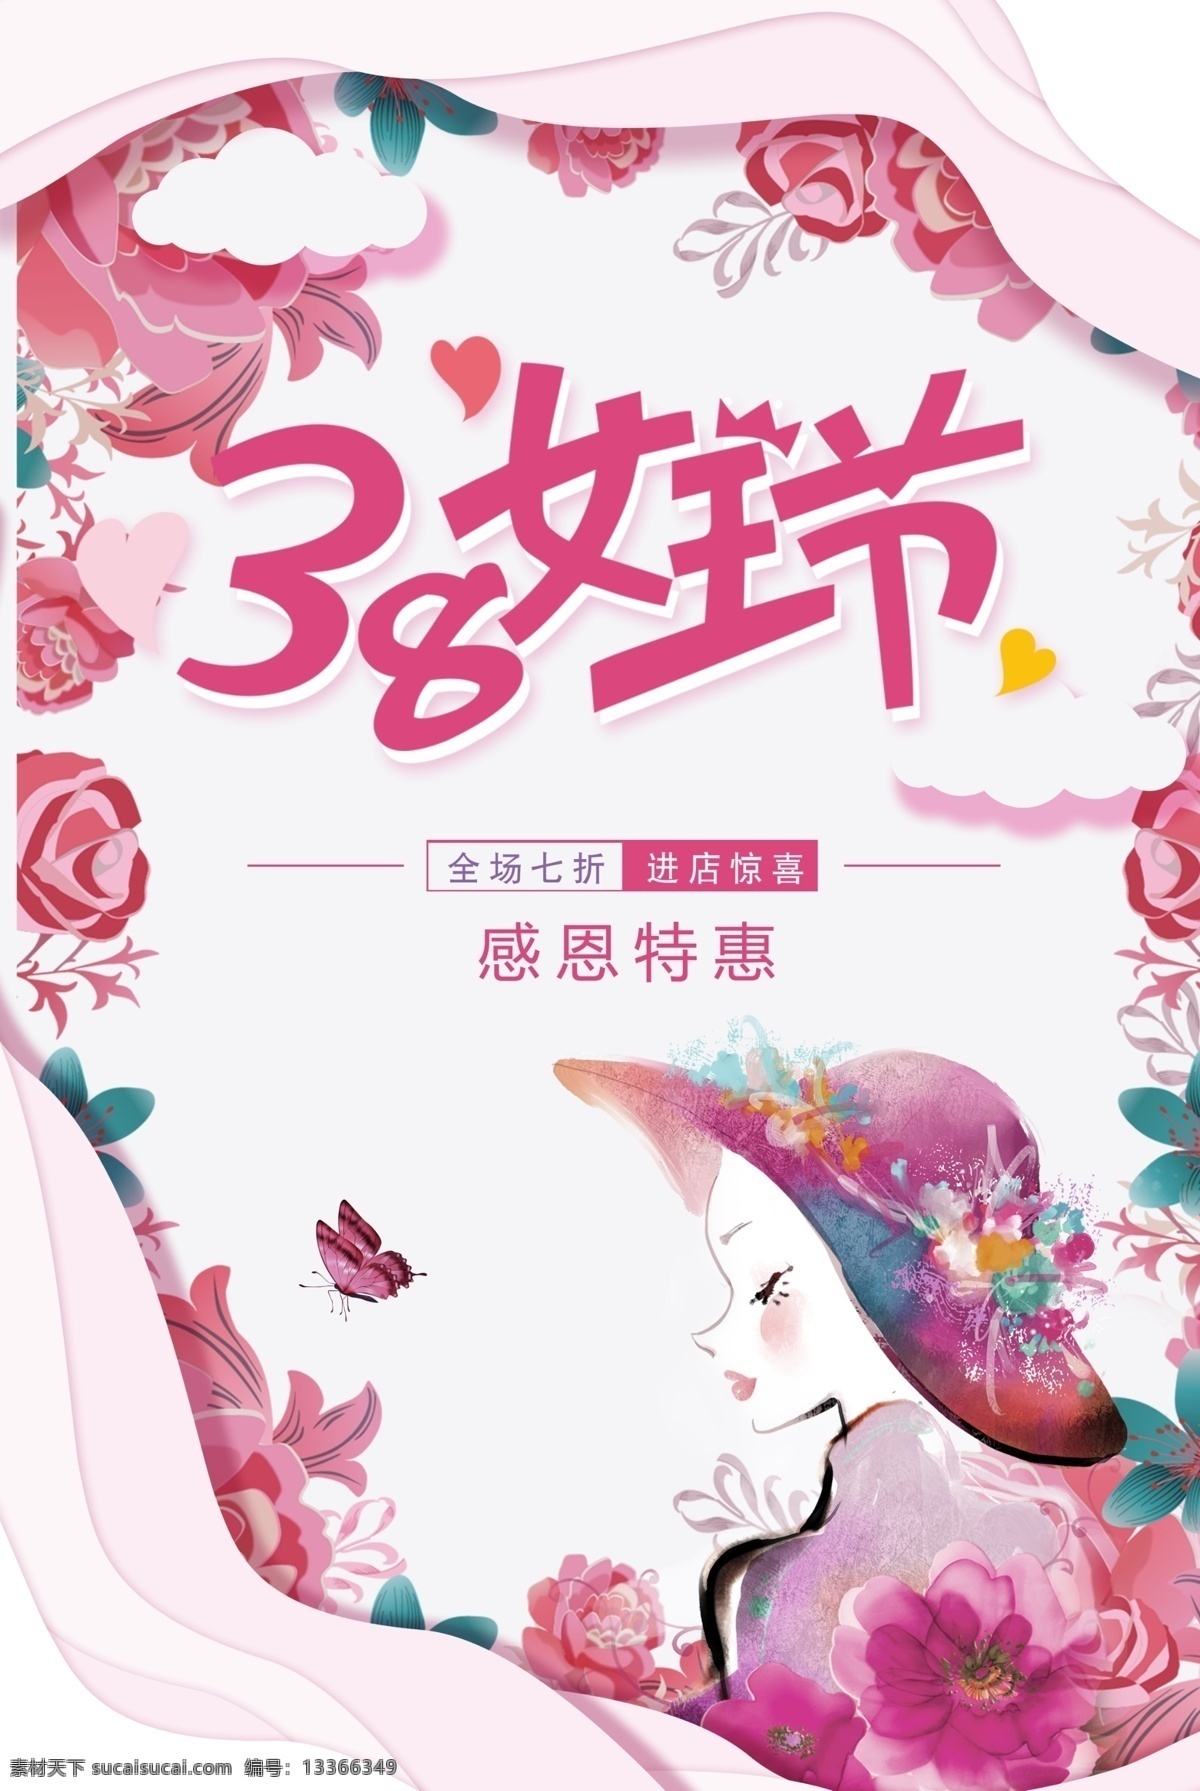 粉色 38 女王 节 海报 花 插画女人 感恩特惠 蝴蝶 3.8妇女节